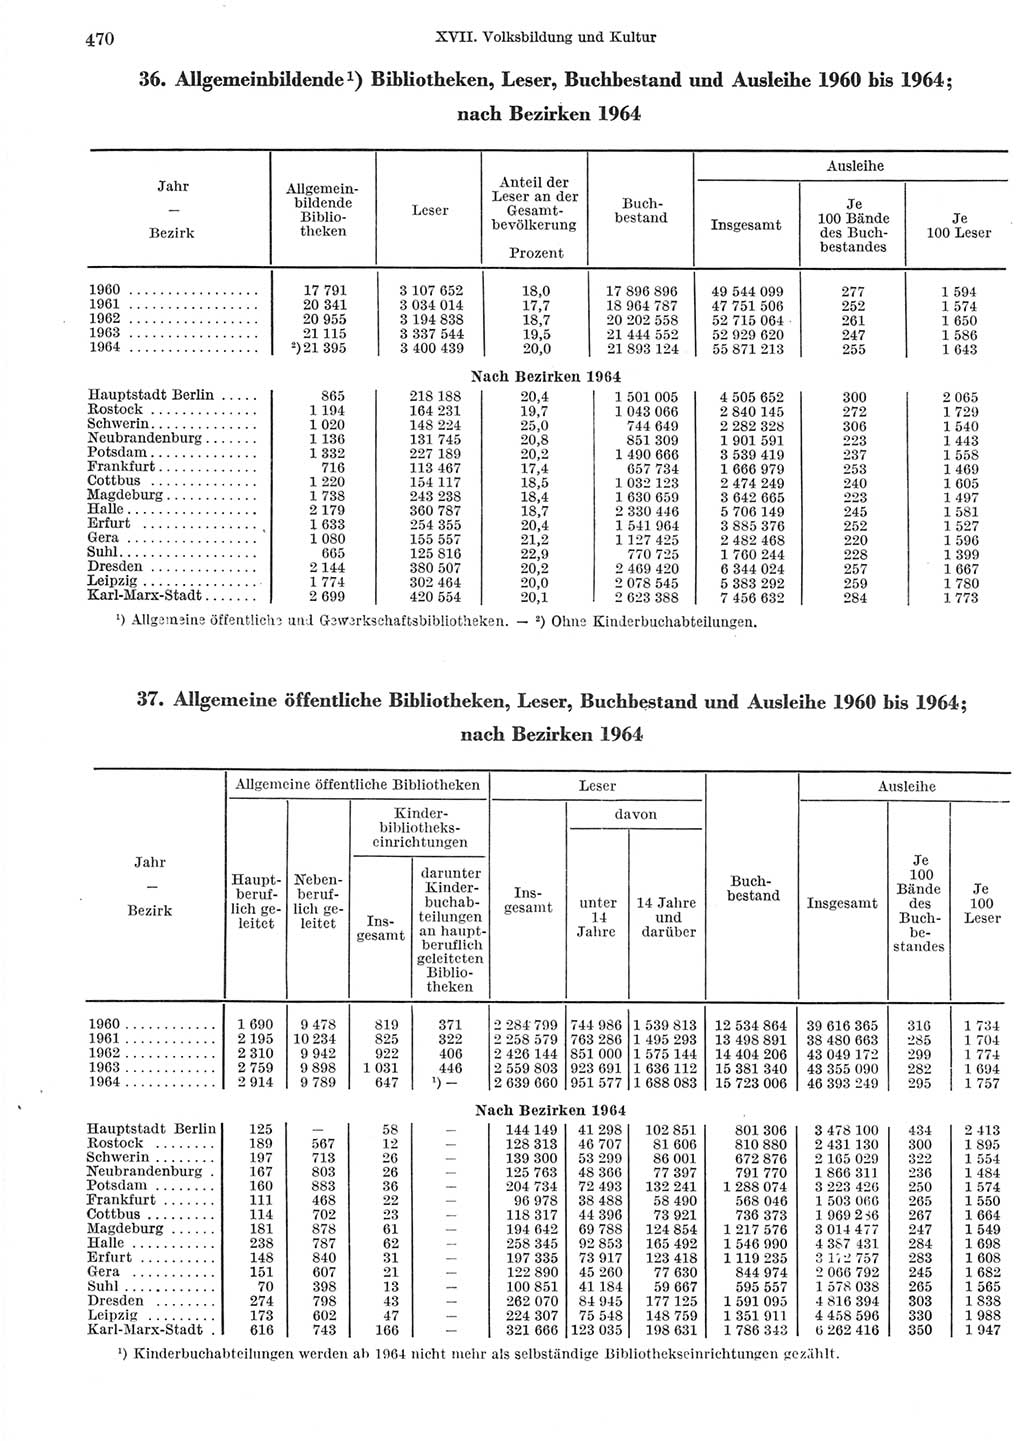 Statistisches Jahrbuch der Deutschen Demokratischen Republik (DDR) 1965, Seite 470 (Stat. Jb. DDR 1965, S. 470)